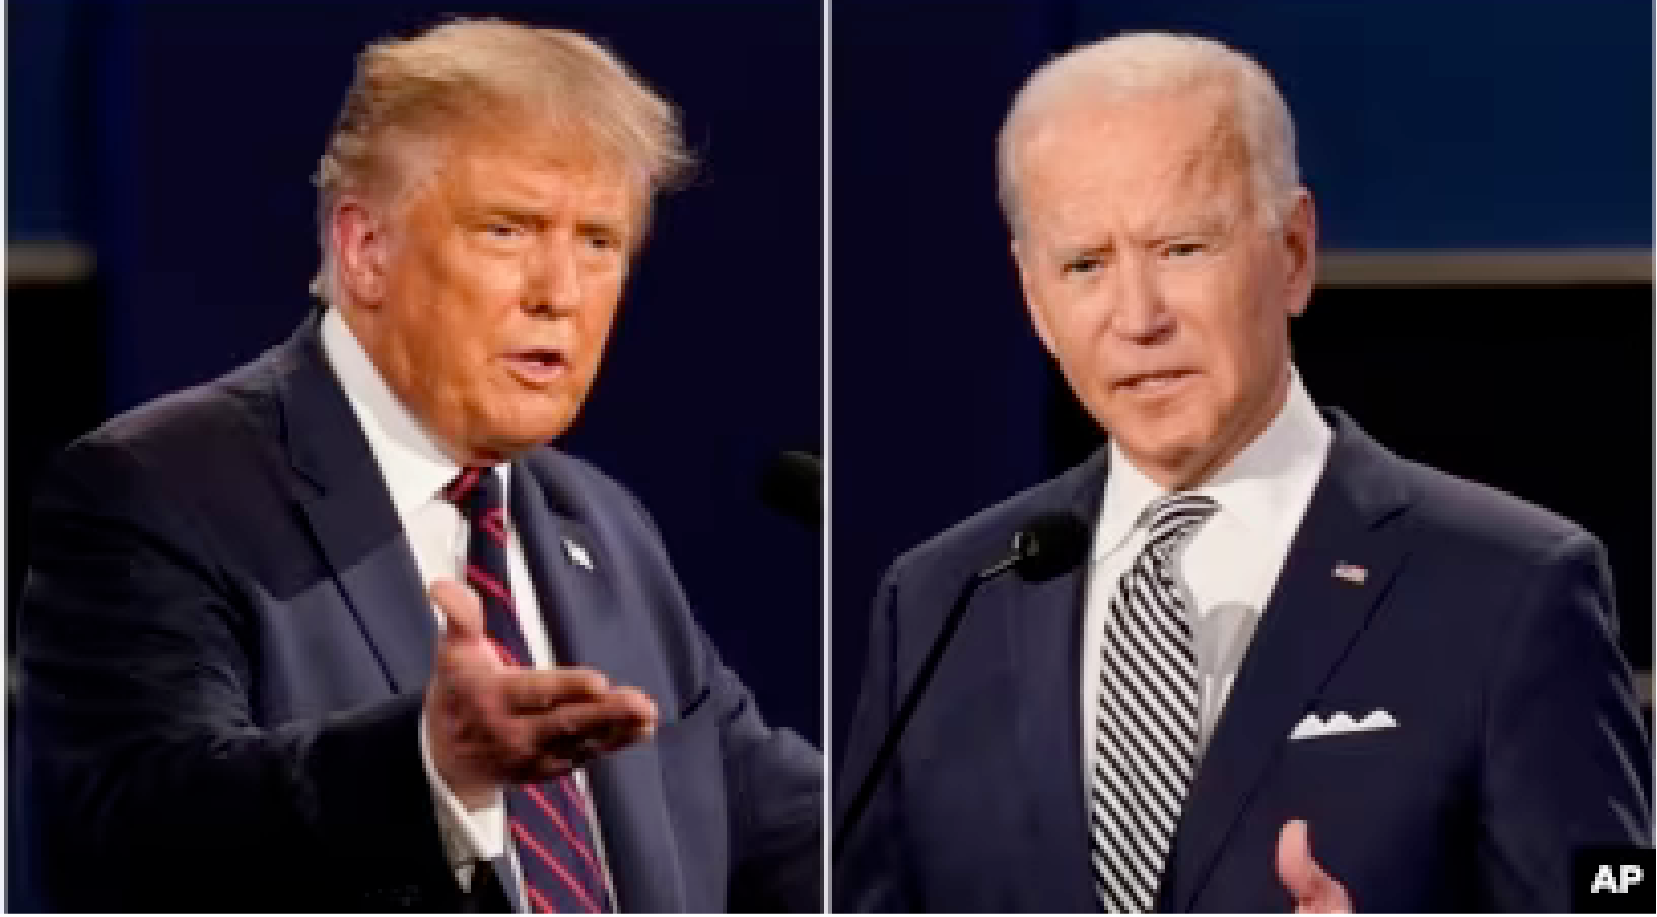 Légende : Donald Trump et Joe Biden candidats à la présidence des Etats-Unis © Voz de America